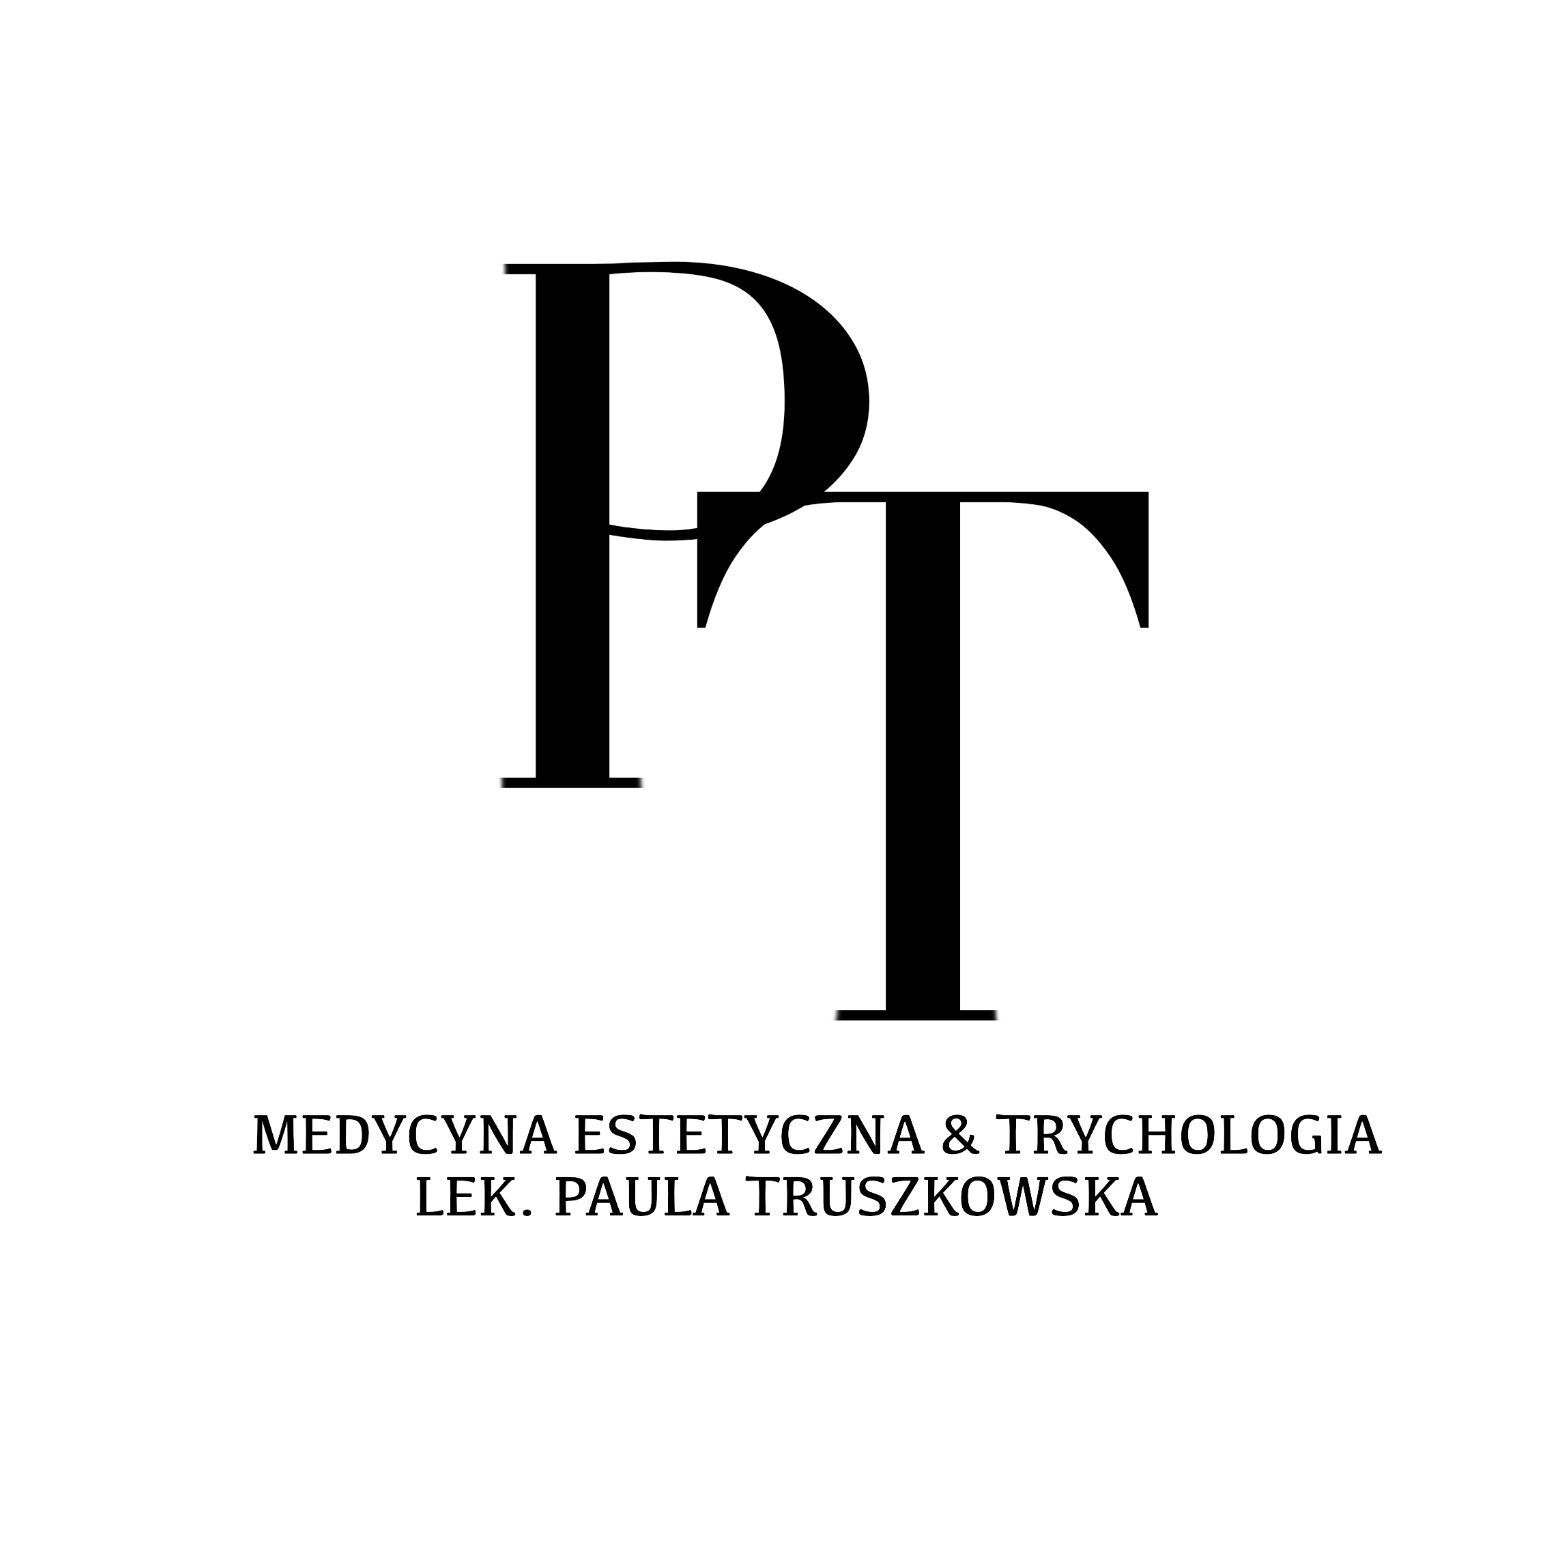 Medycyna Estetyczna & Trychologia lek. Paula Truszkowska, Kazimierza Pułaskiego 2, 2, 81-368, Gdynia